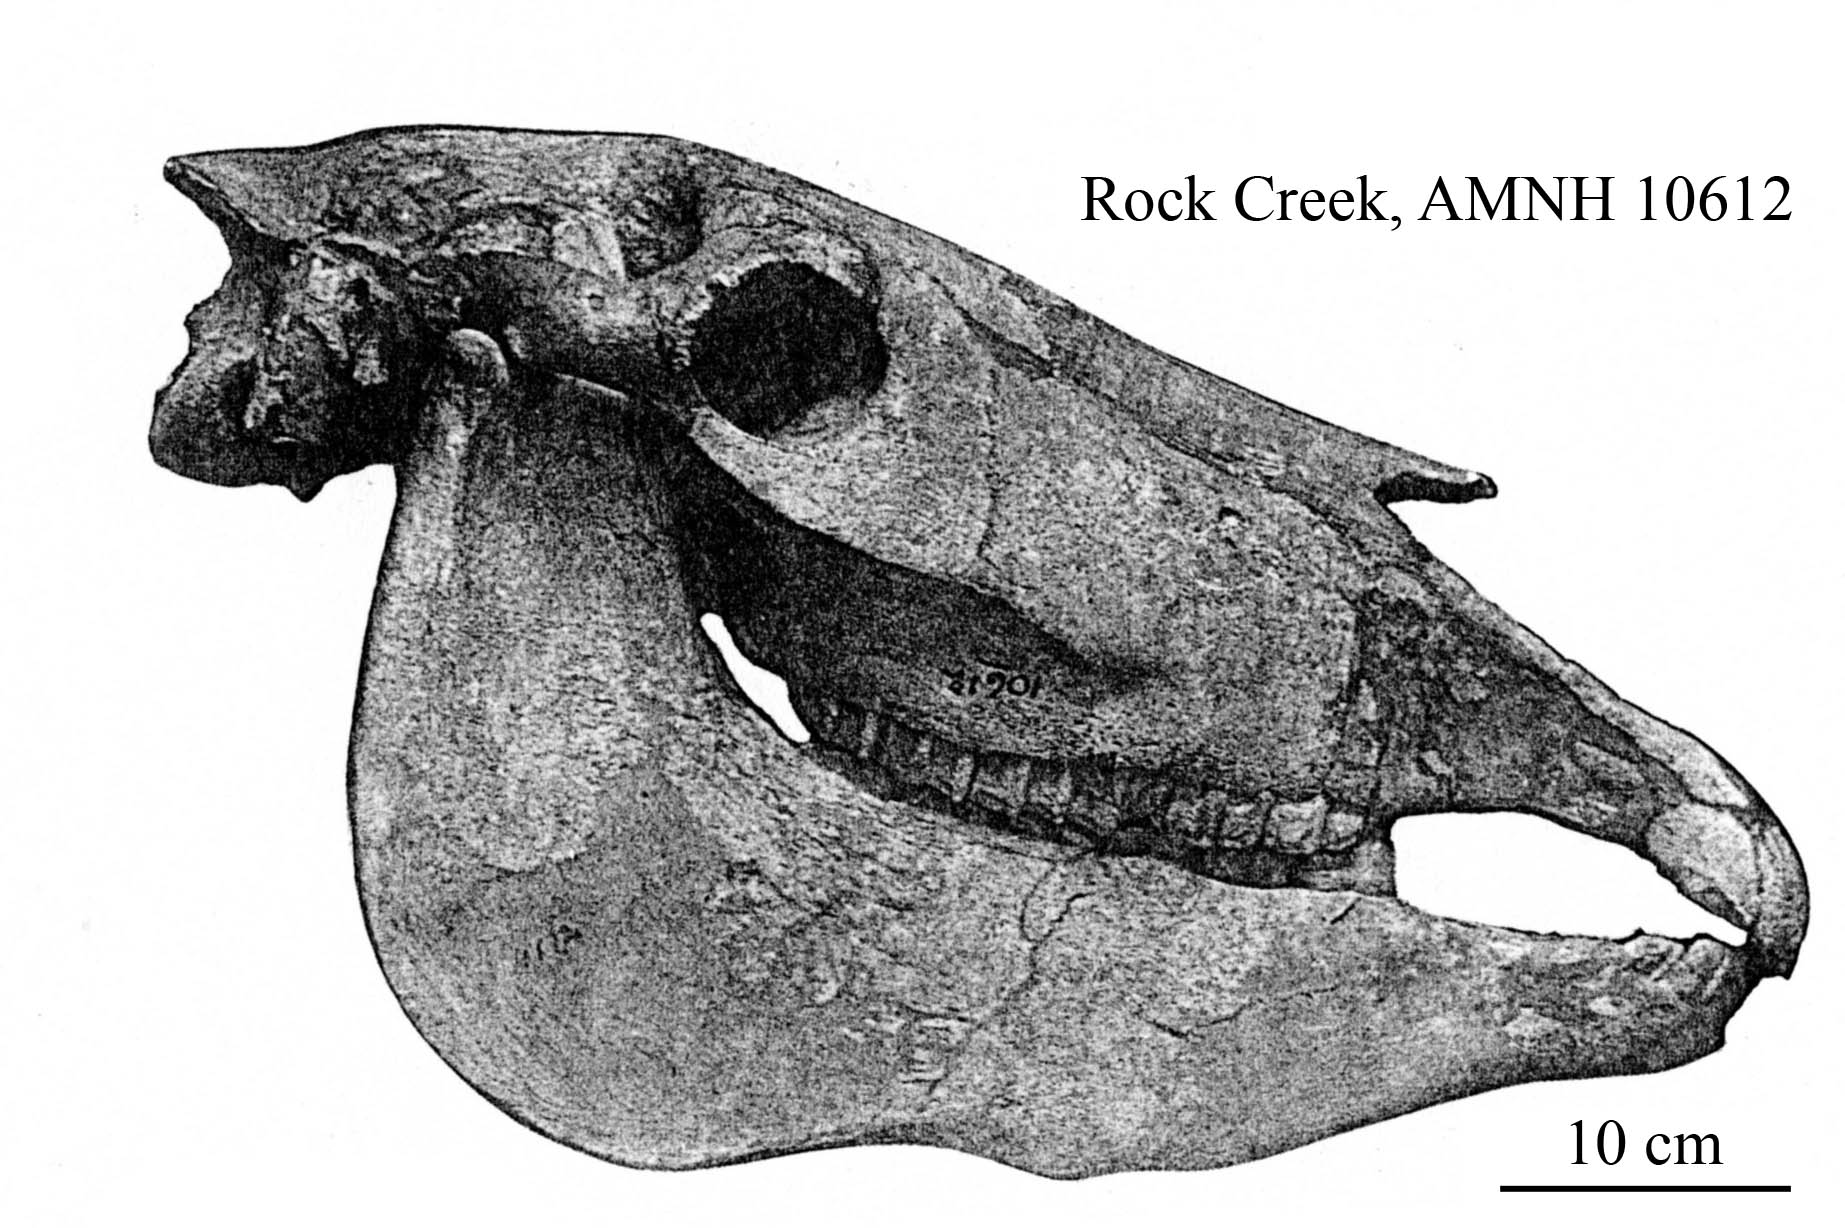 E. scotti AMNH 10612, profile after Gazin